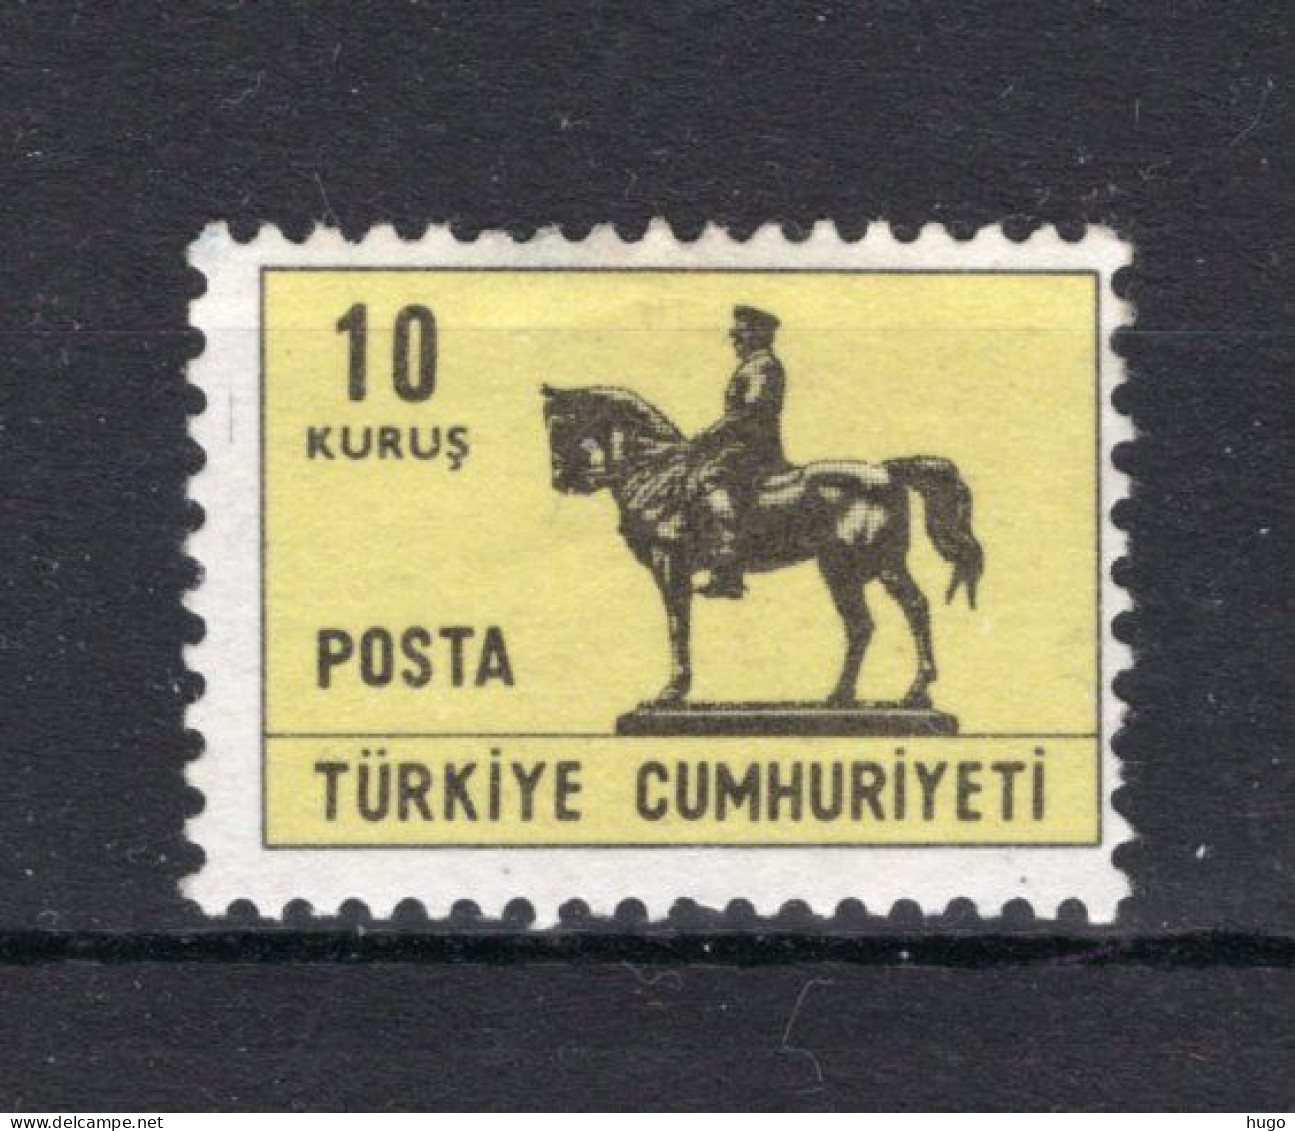 TURKIJE Yt. 1810 MNH 1966-1967 - Ungebraucht